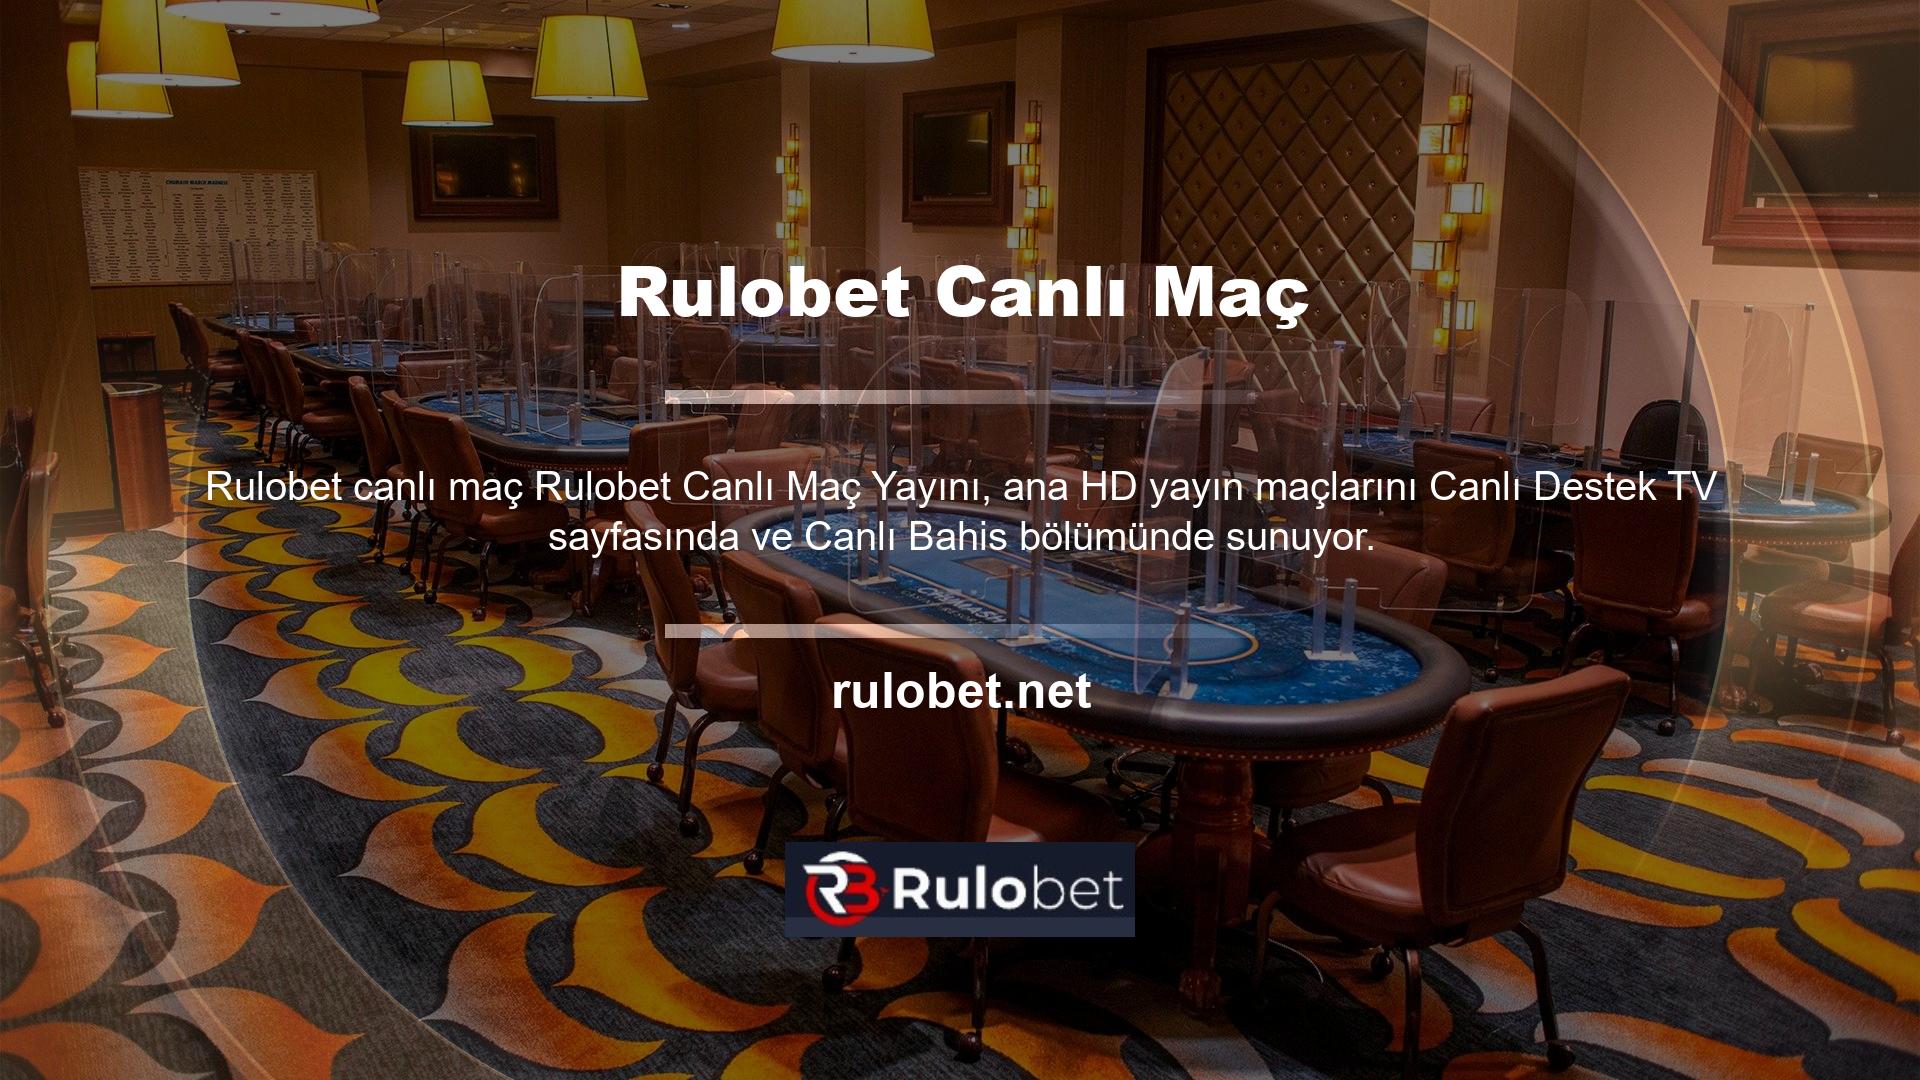 Rulobet ücretsiz canlı yayını, kullanıcıların ekstra gelir elde etmesine olanak tanıyor